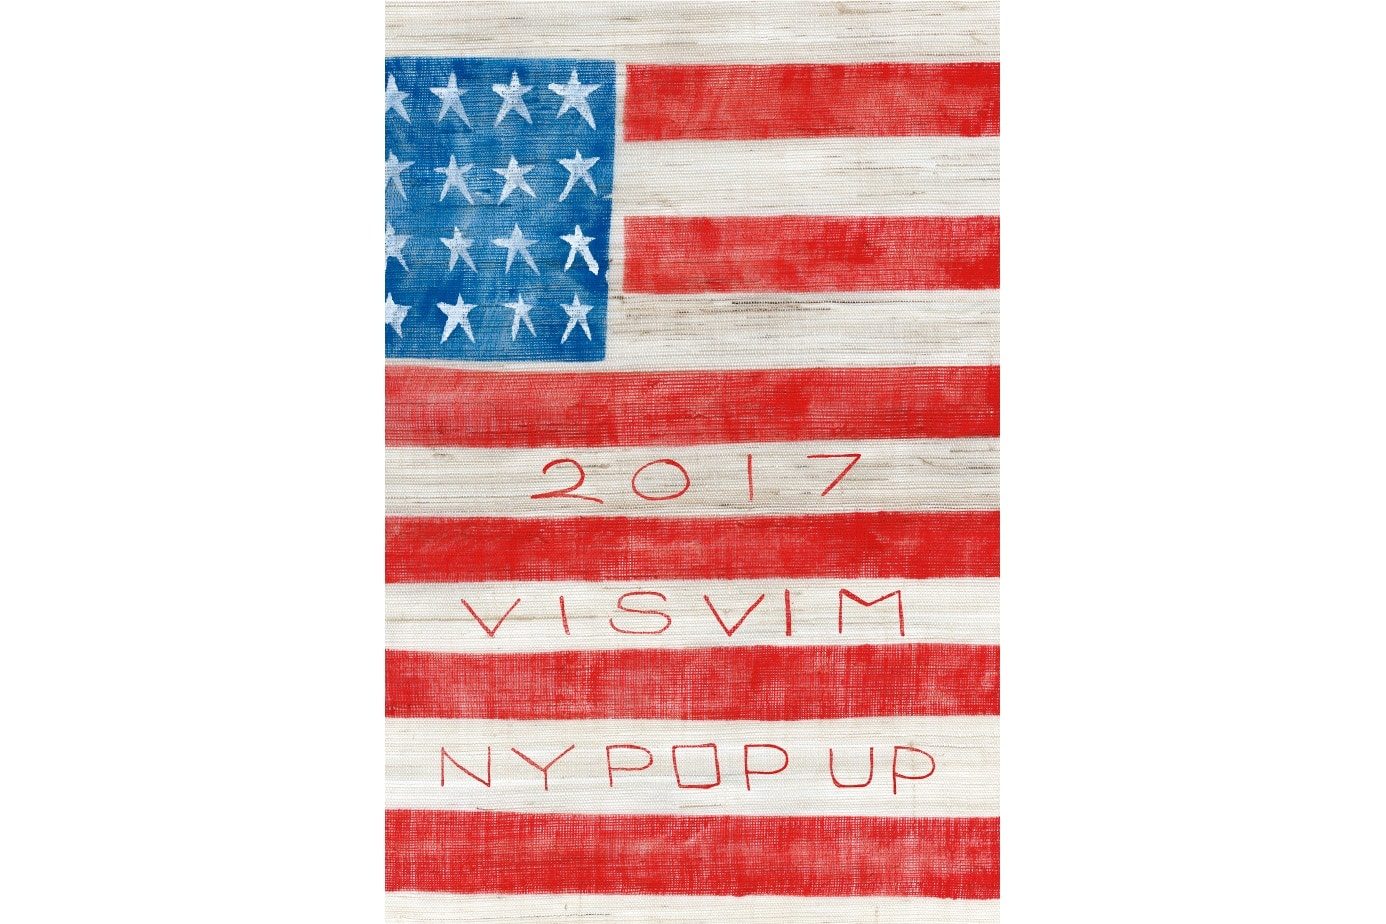 visvim 將於紐約開設全新 Pop-Up 店舖